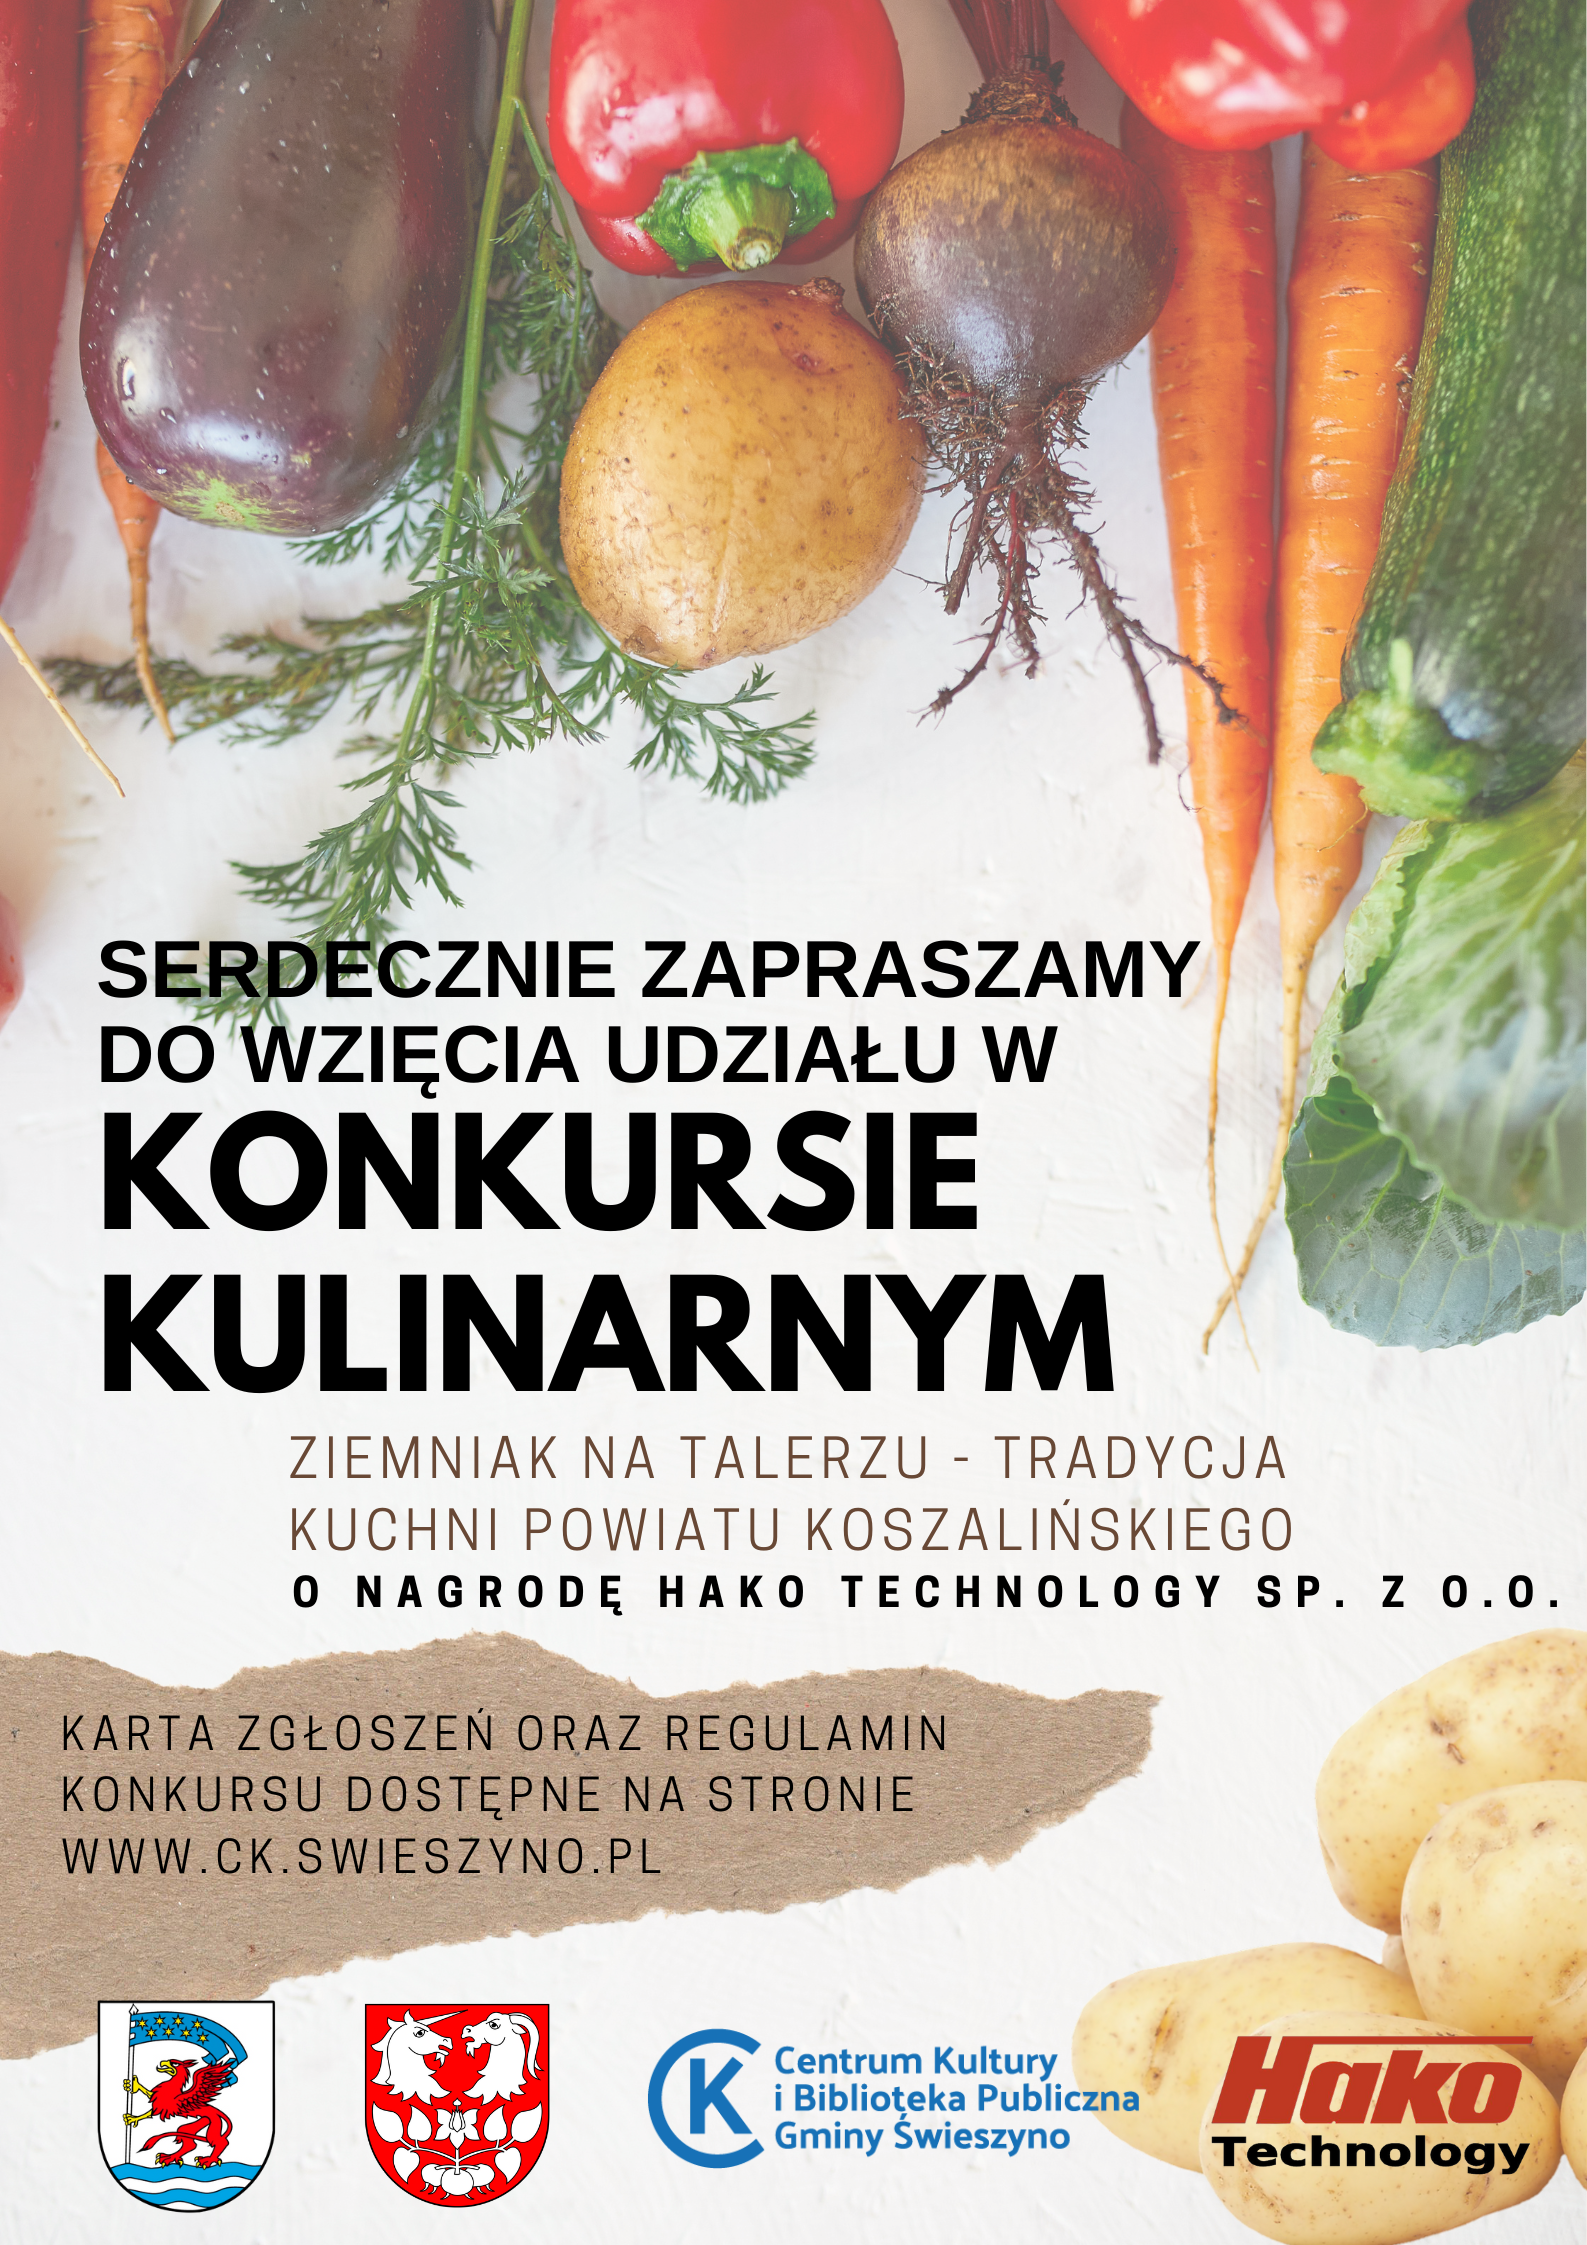 Plakat promocyjny konkursu kulinarnego Ziemniak na talerzu tradycja kuchni powiatu koszalińskiego